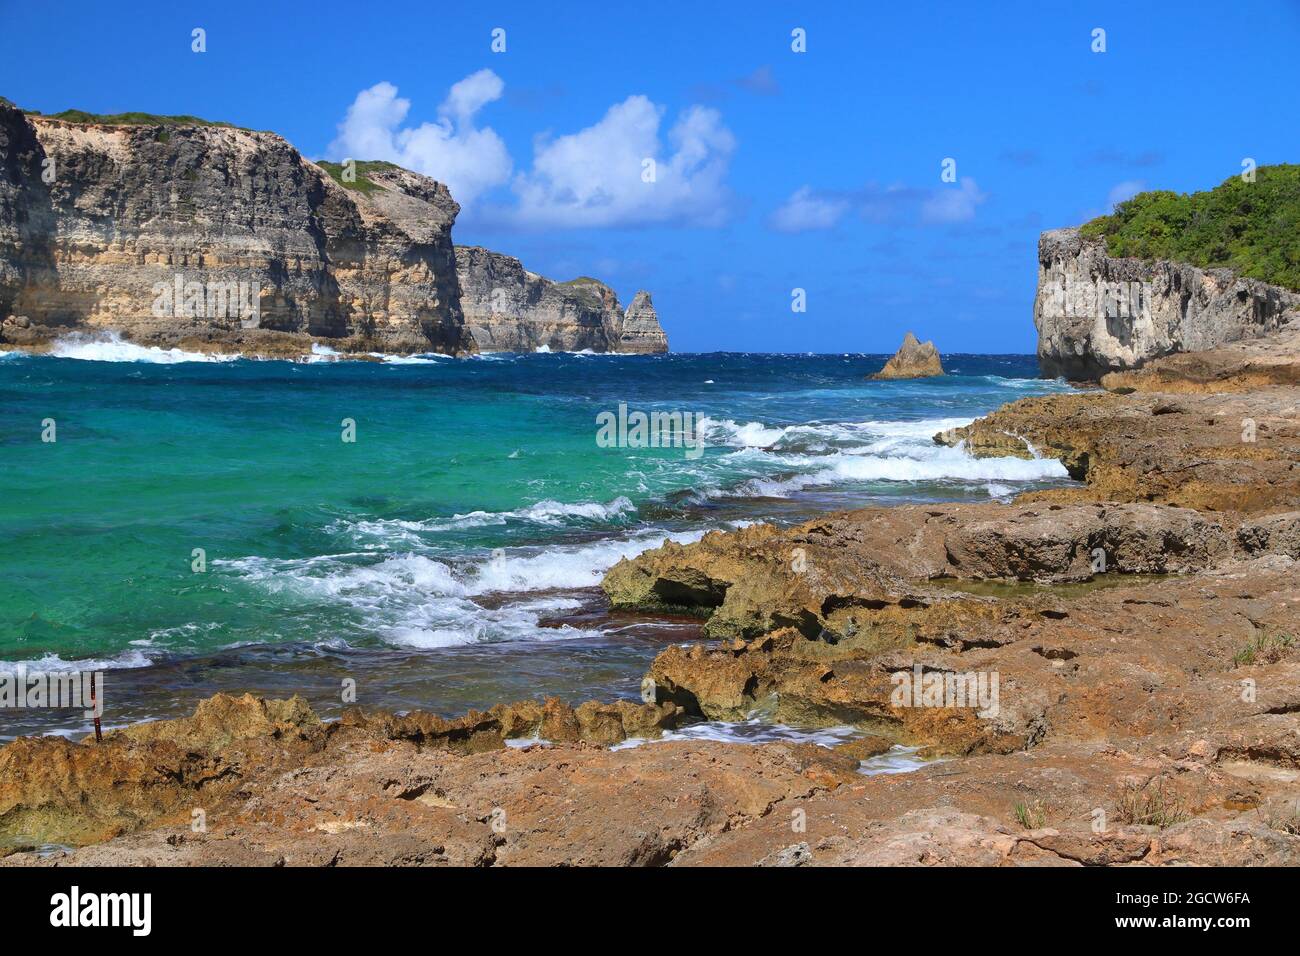 Landschaft von Guadeloupe - Porte d'Enfer (Höllentor). Karibische Landschaft. Stockfoto